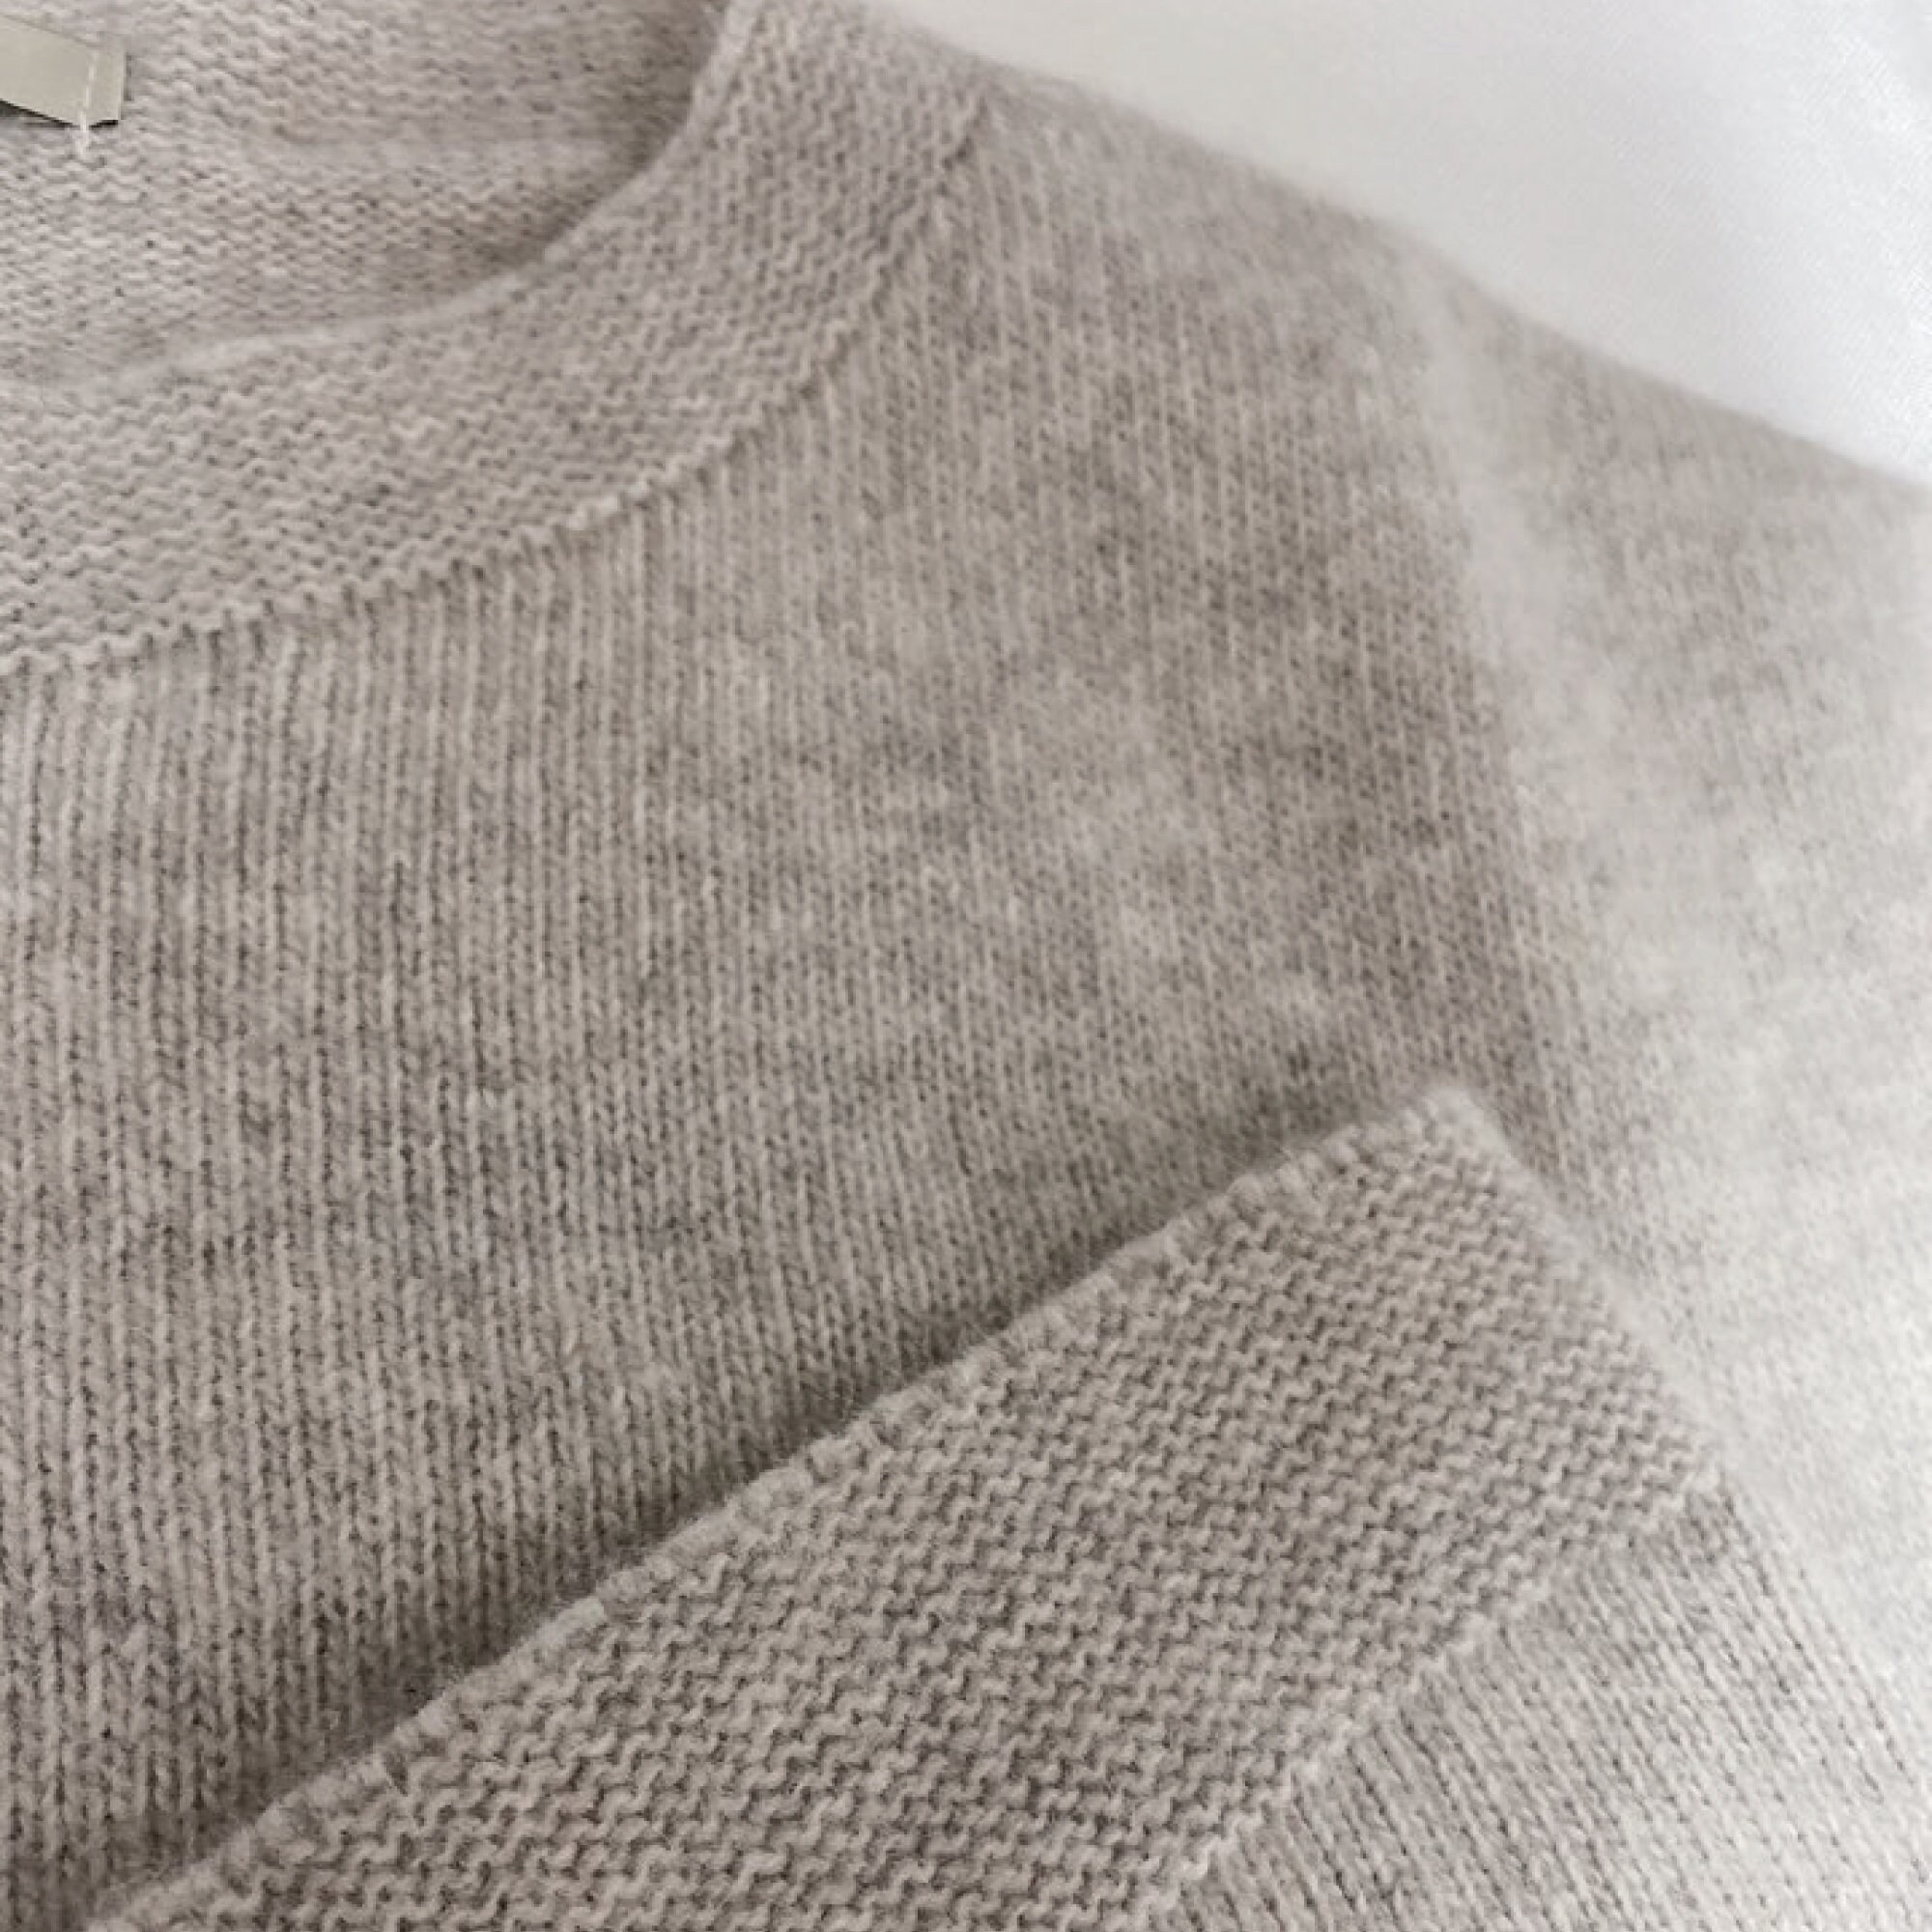 Sweater Vest / Extra Fine Wool Sweater Vest / Knit Vest / Knit | Etsy